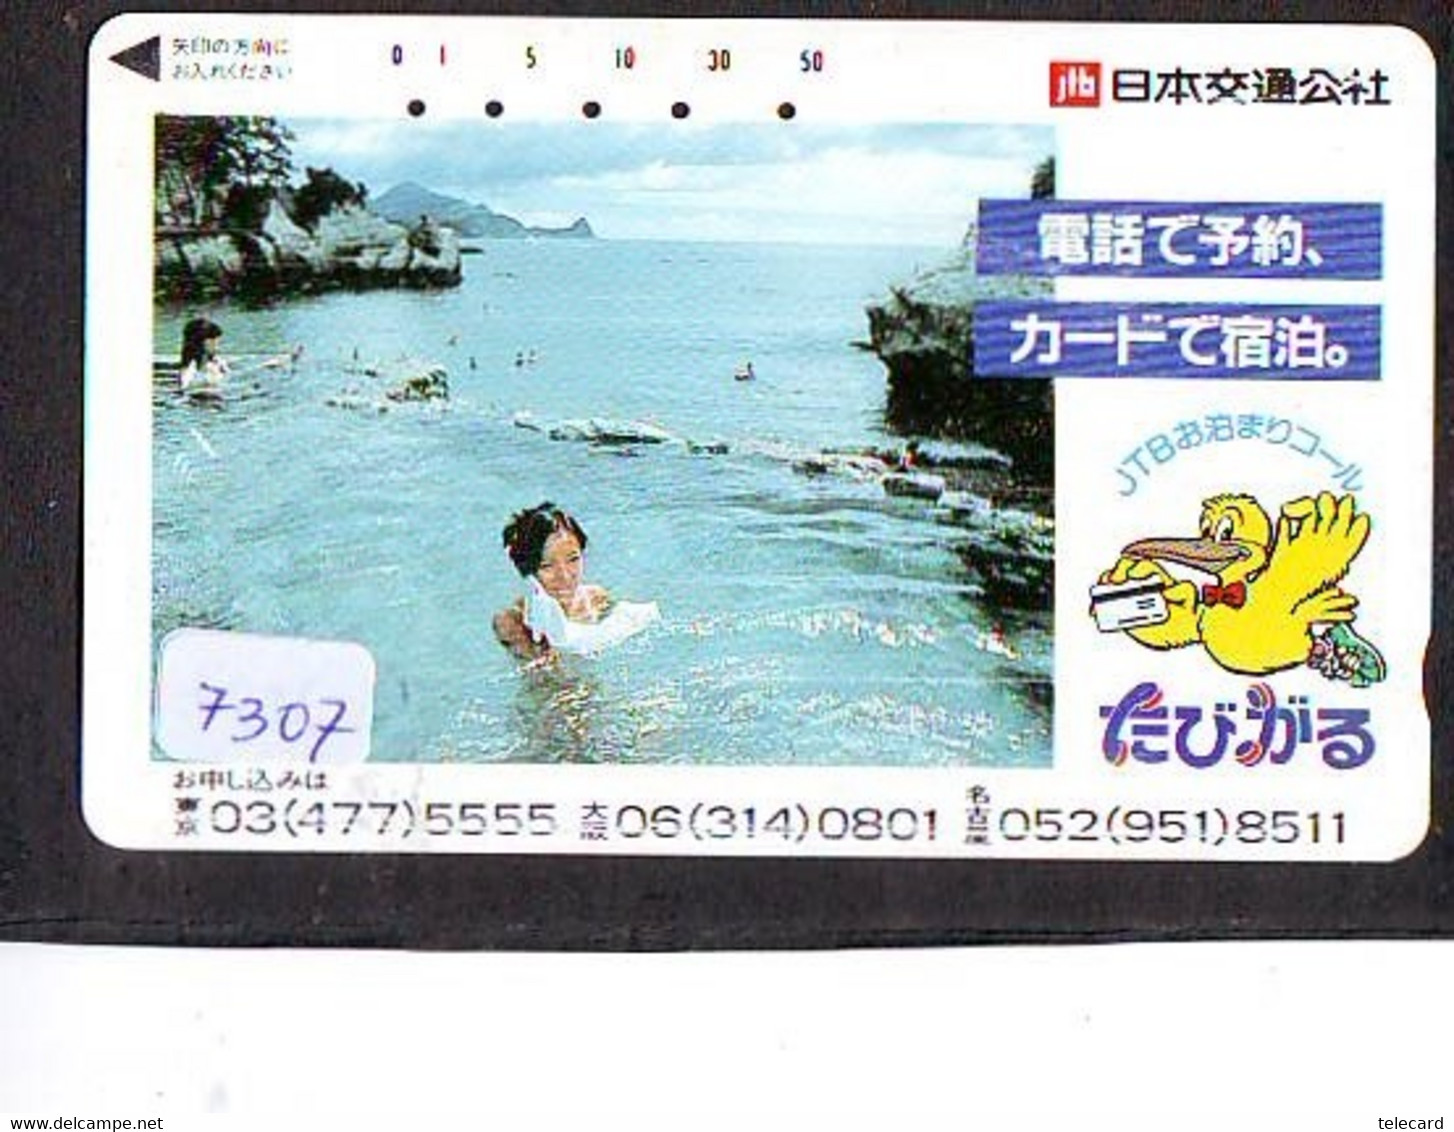 Télécarte Japon * FEMME EROTIQUE (7307) BATH * PHONECARD JAPAN * TELEFONKARTE *  BATHCLOTHES LINGERIE - Fashion